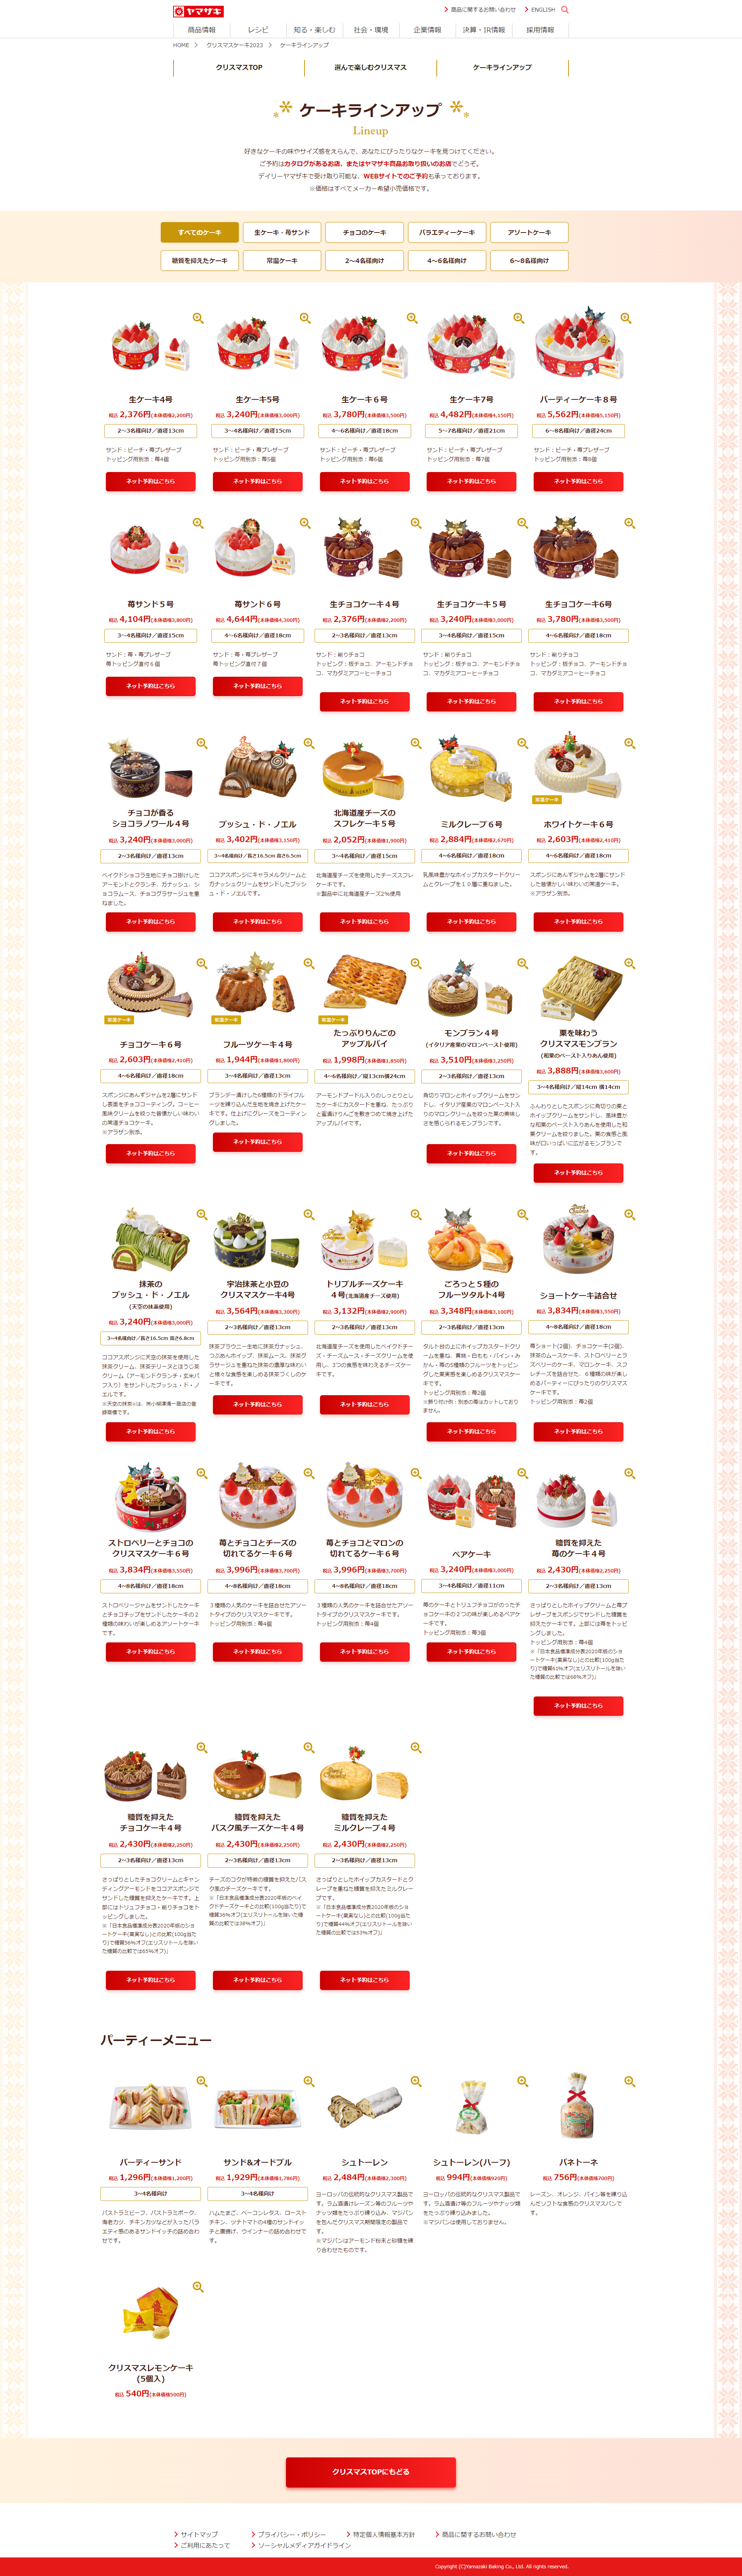 山崎製パン株式会社 クリスマス2023WEBサイトのメイン画像